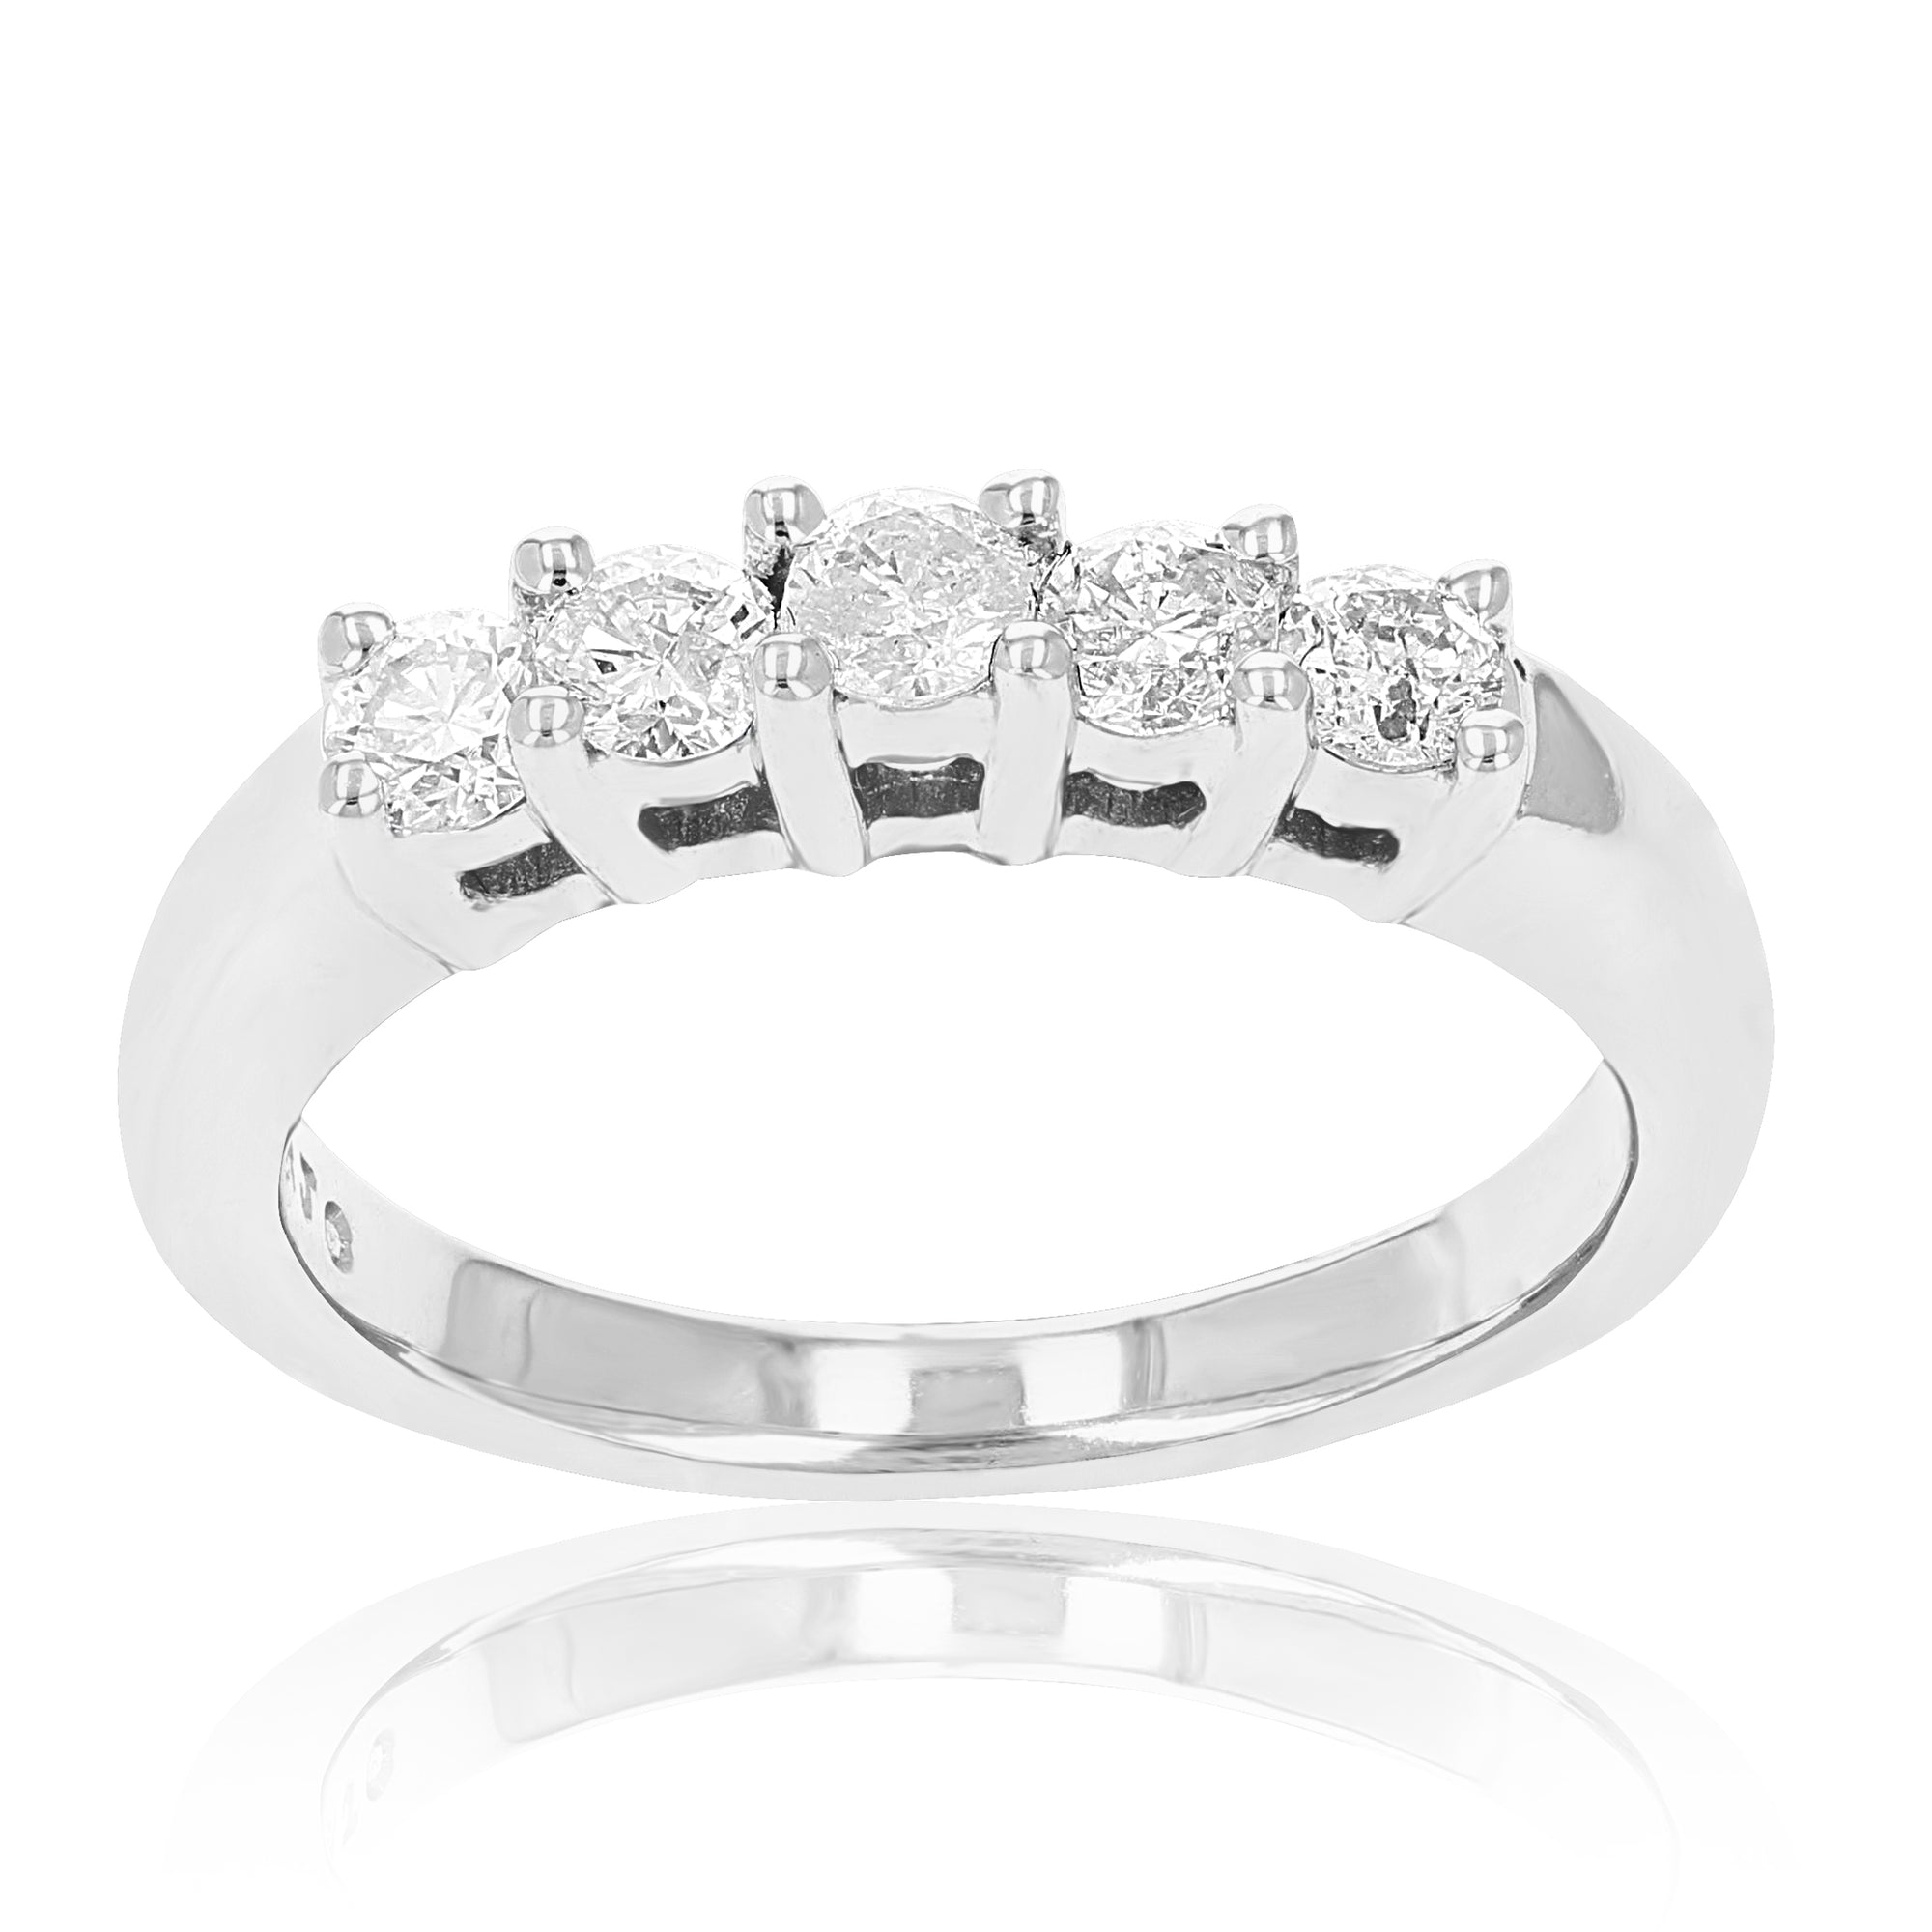 1.10 cttw Semi Mount Diamond Wedding Bridal Set 14K White Gold Round Size 7